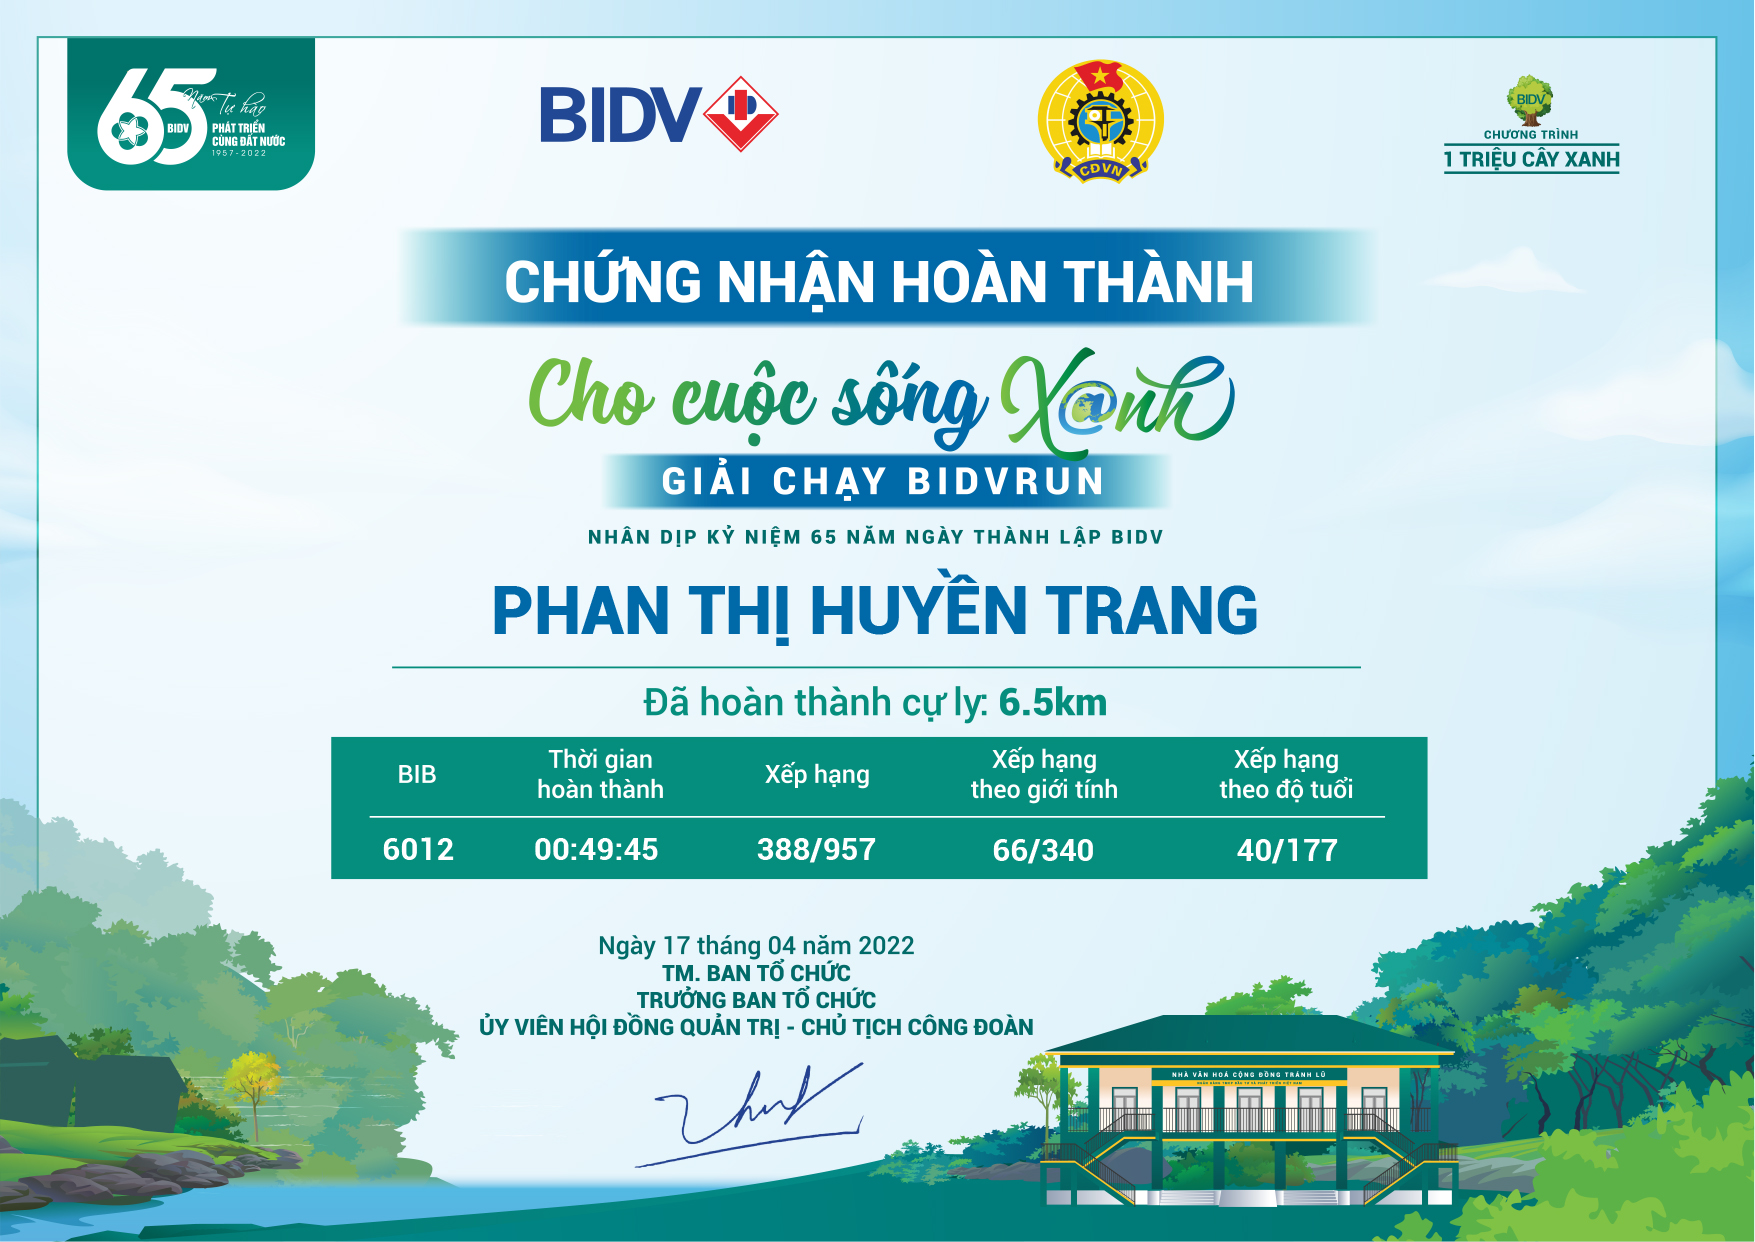 6012 - Phan Thị Huyền Trang